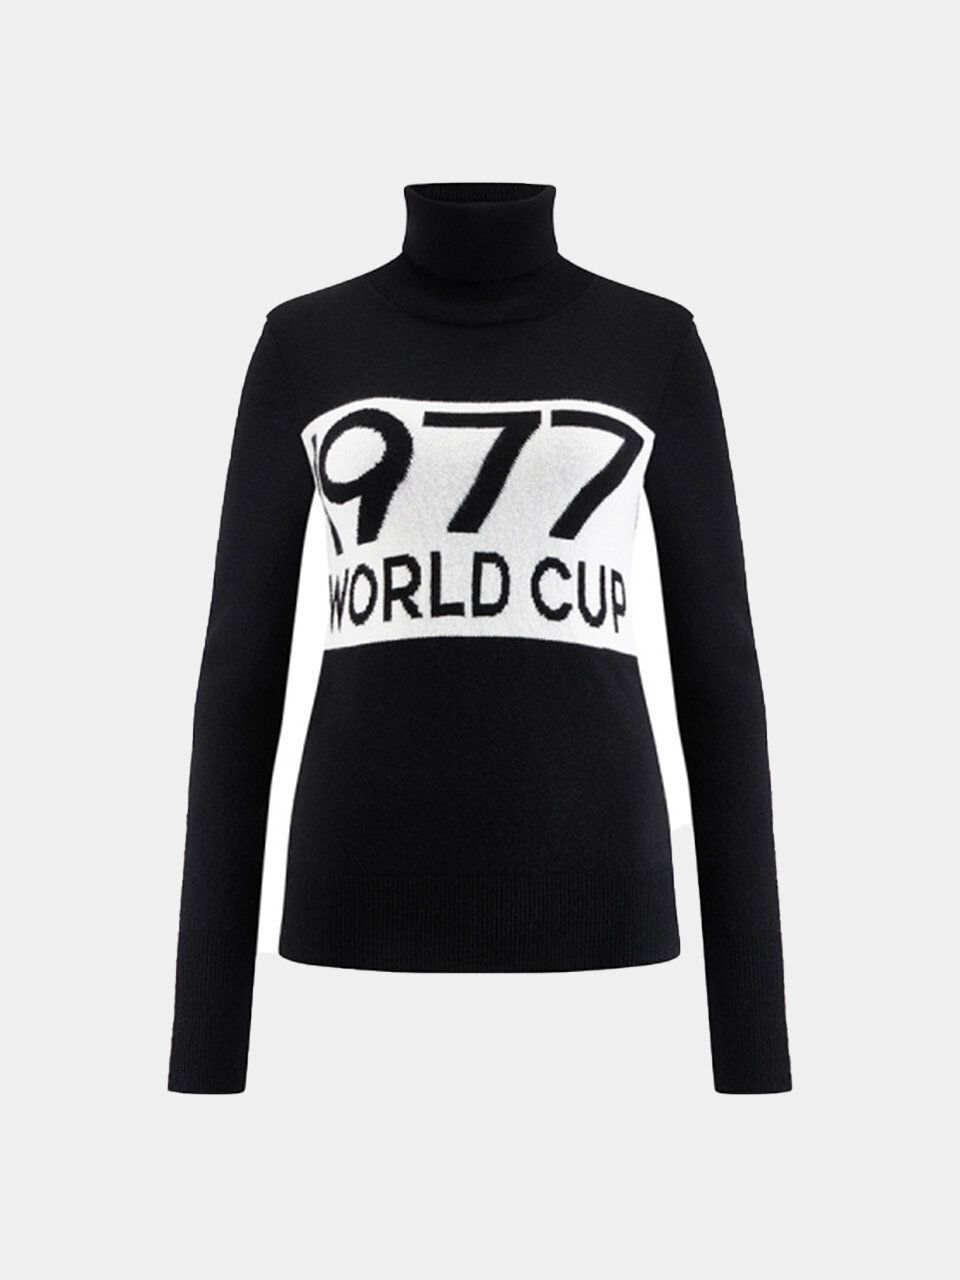 We Norwegians - 1977 World Cup Sweater